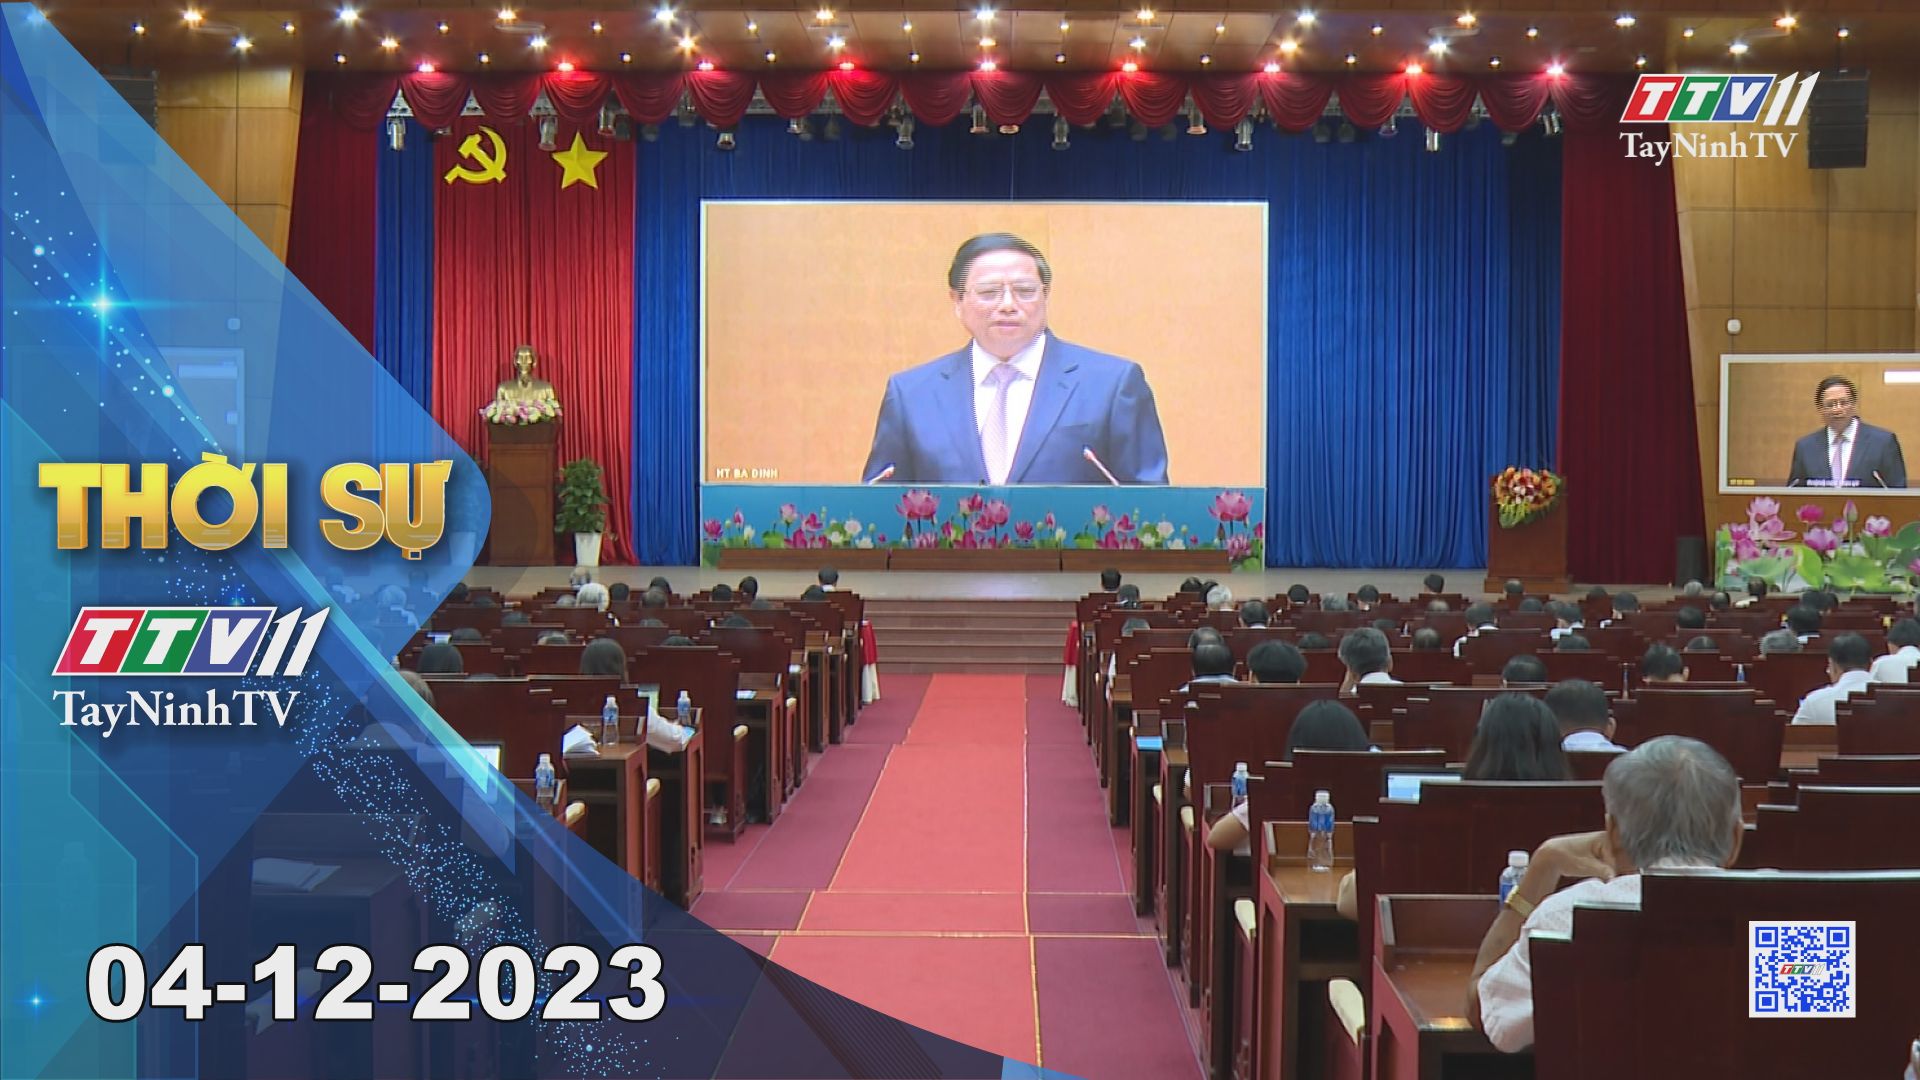 Thời sự Tây Ninh 04-12-2023 | Tin tức hôm nay | TayNinhTV